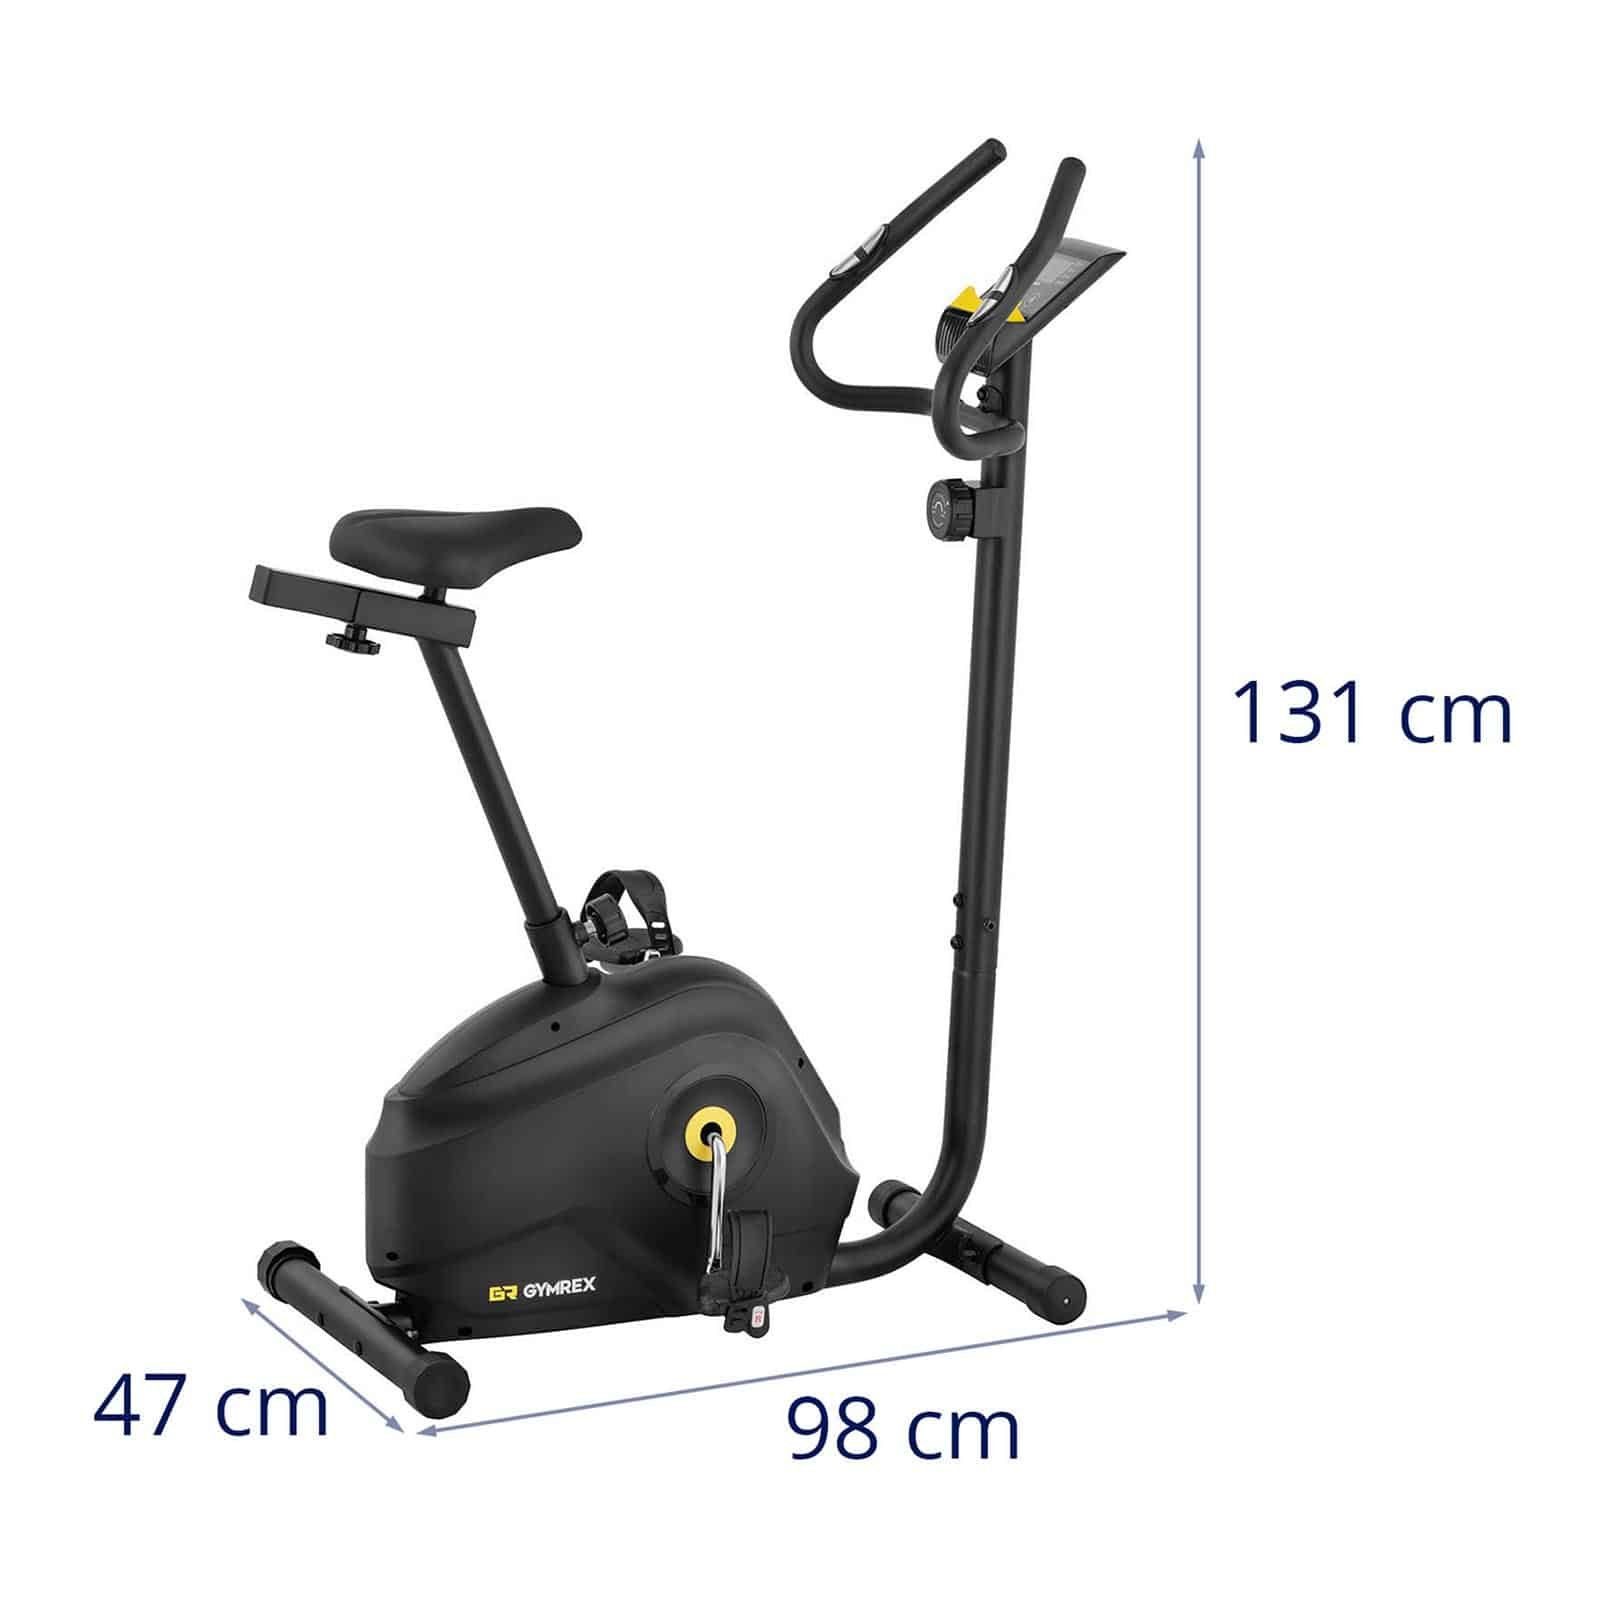 88,5 - - Gymrex LCD 72 kg Heimtrainer bis kg Heimtrainer Schwungmasse Höhe 110 belastbar - 4 - - cm Gymrex